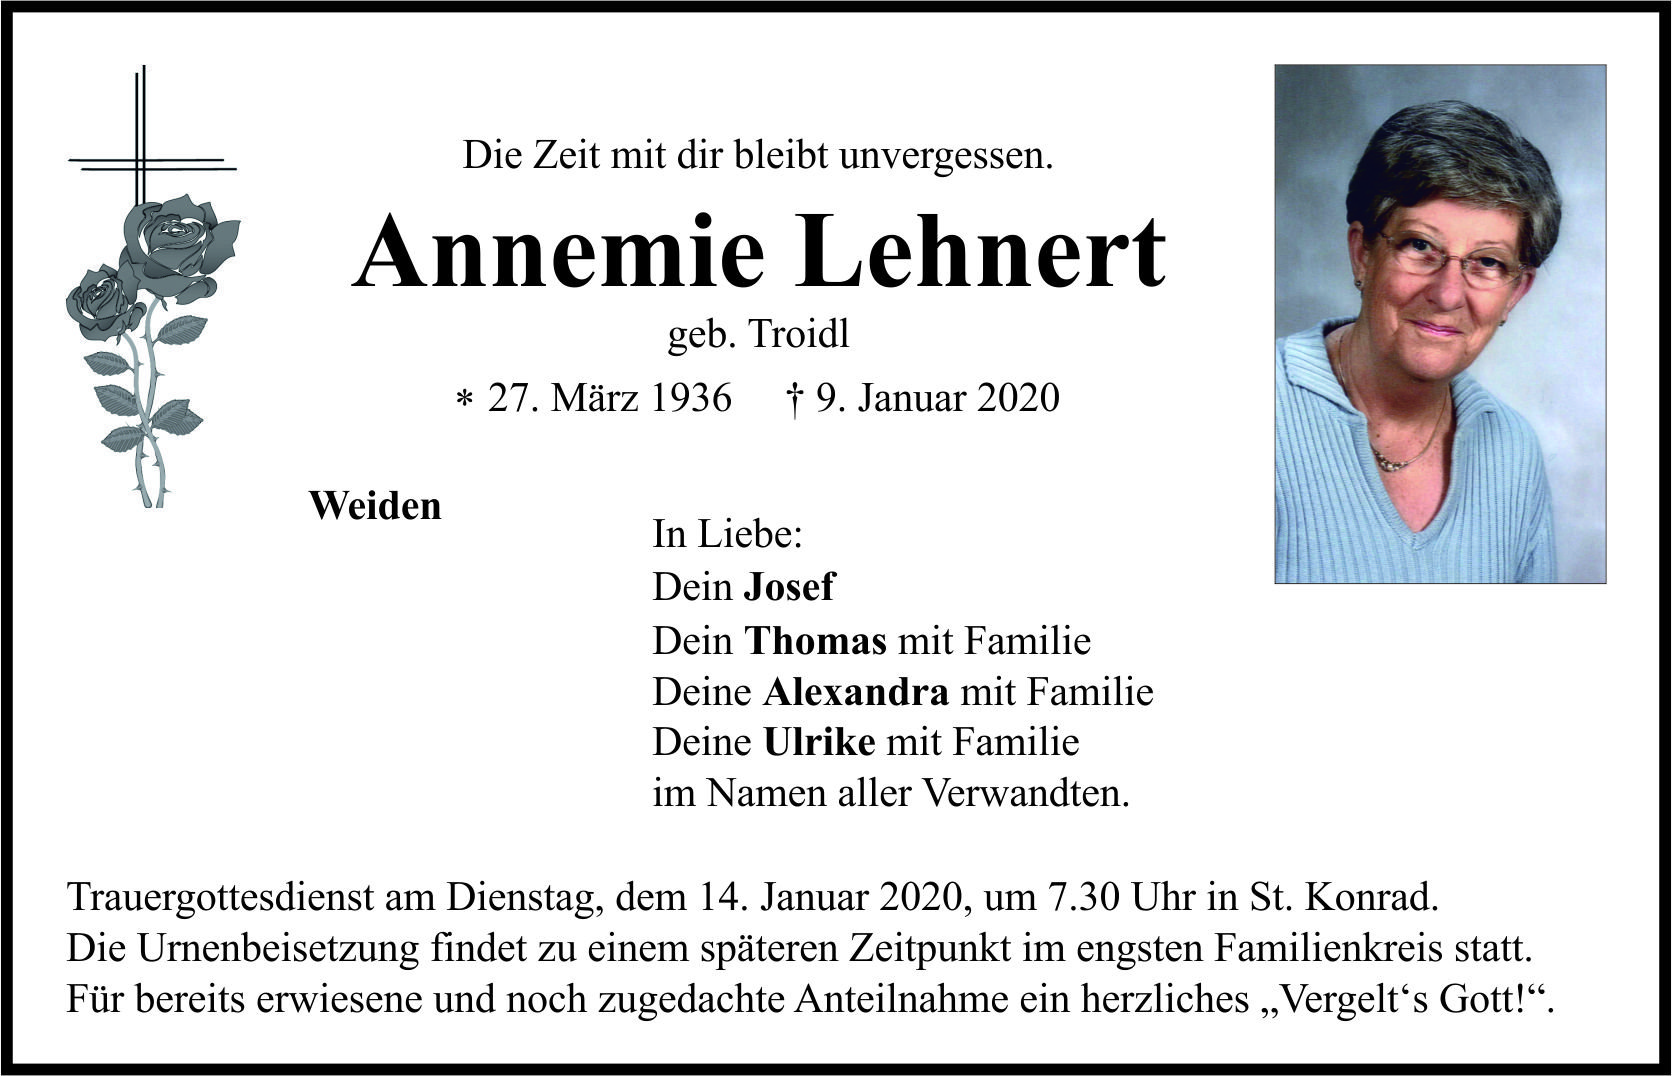 Traueranzeige Annemie Lehnert, Weiden